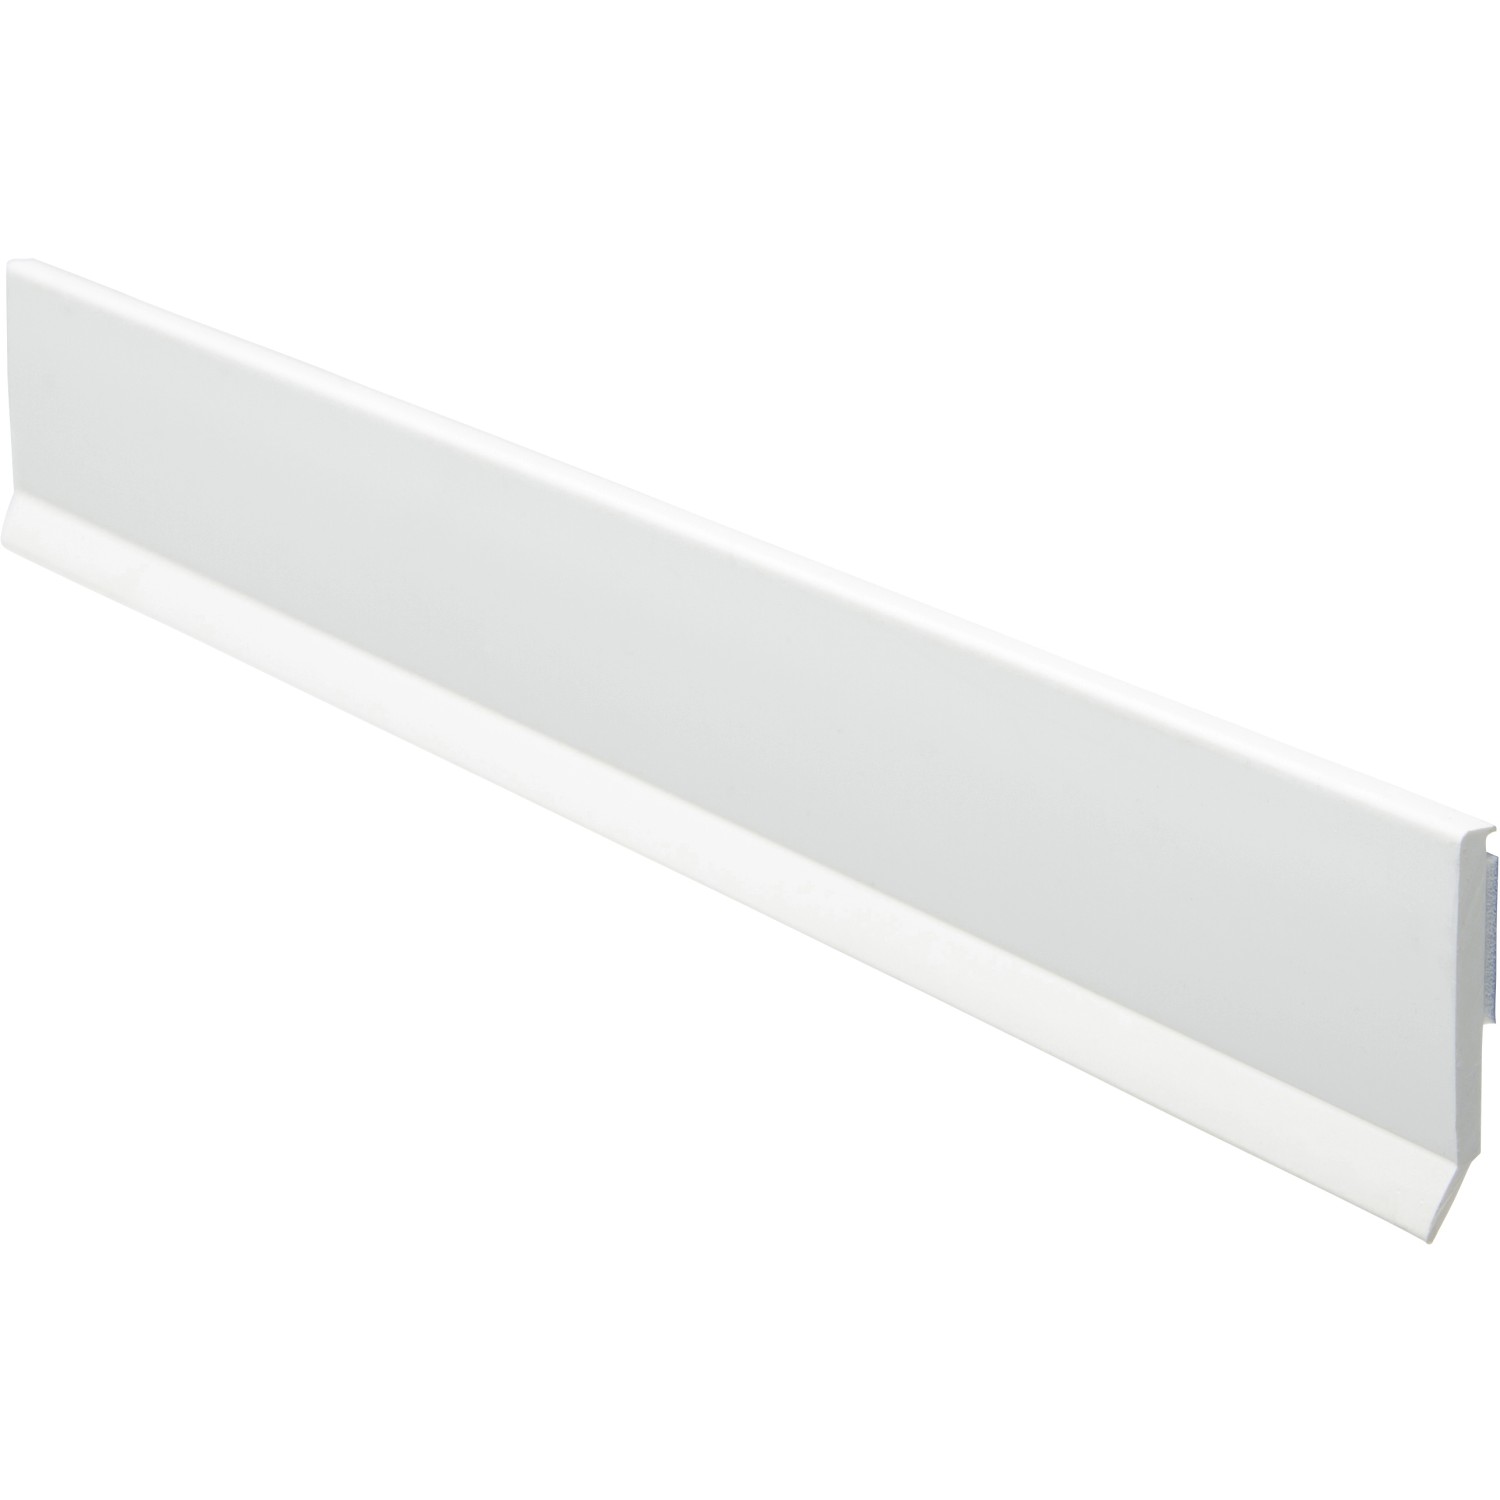 Flachleiste mit Lippe selbstklebend 30 x 2,5 mm Nutzlänge 217,5 cm Weiß  kaufen bei OBI